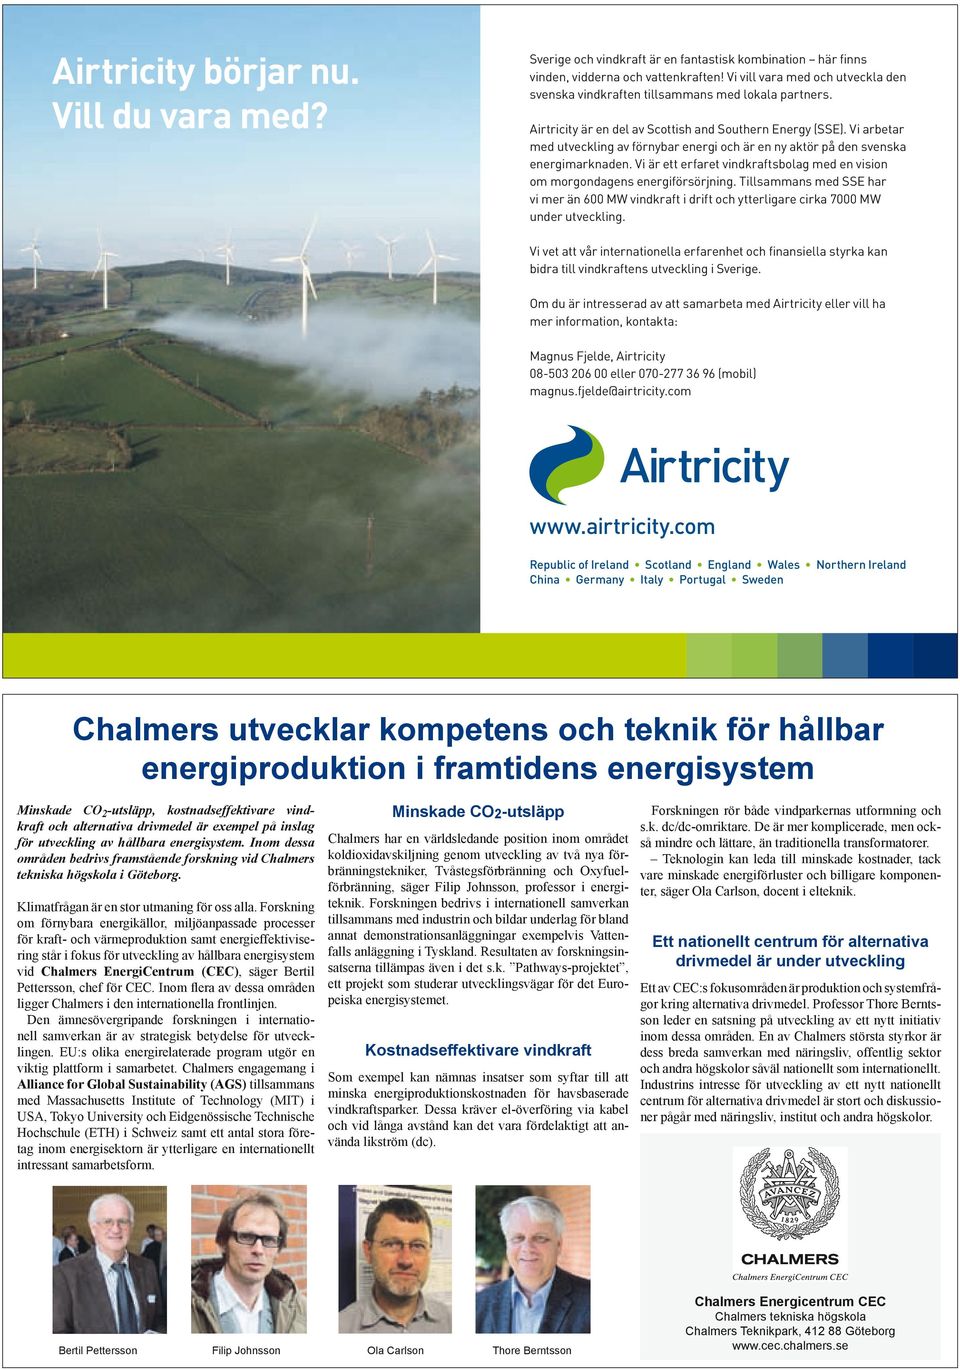 Vi arbetar med utveckling av förnybar energi och är en ny aktör på den svenska energimarknaden. Vi är ett erfaret vindkraftsbolag med en vision om morgondagens energiförsörjning.